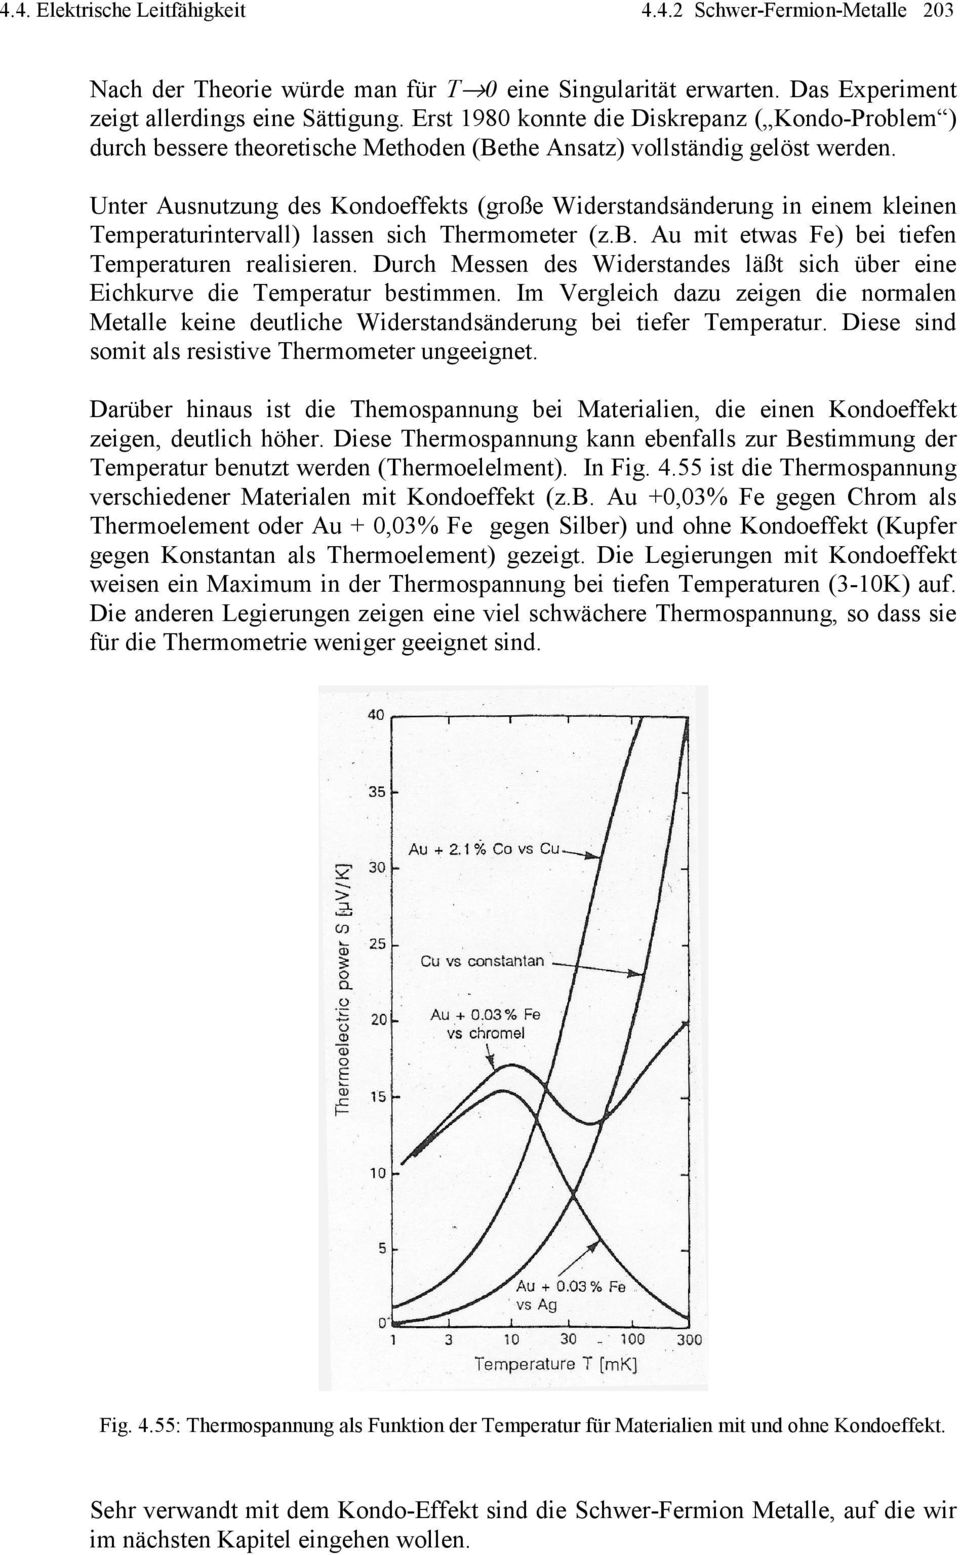 Unter Ausnutzung des Kondoeffekts (große Widerstandsänderung in einem kleinen Temperaturintervall) lassen sich Thermometer (z.b. Au mit etwas Fe) bei tiefen Temperaturen realisieren.